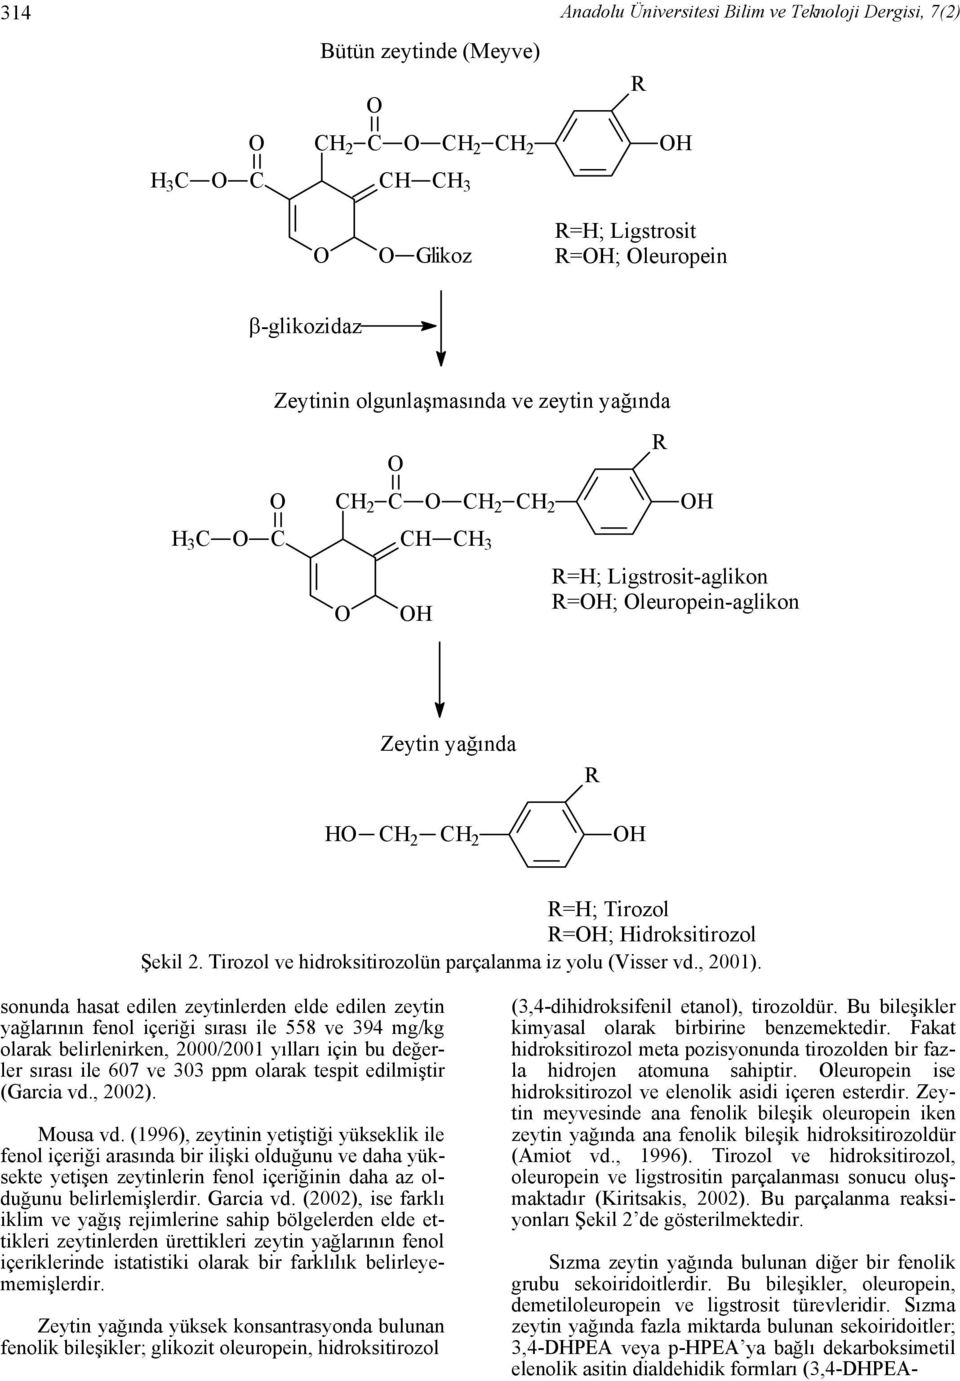 Tirozol ve hidroksitirozolün parçalanma iz yolu (Visser vd., 2001).